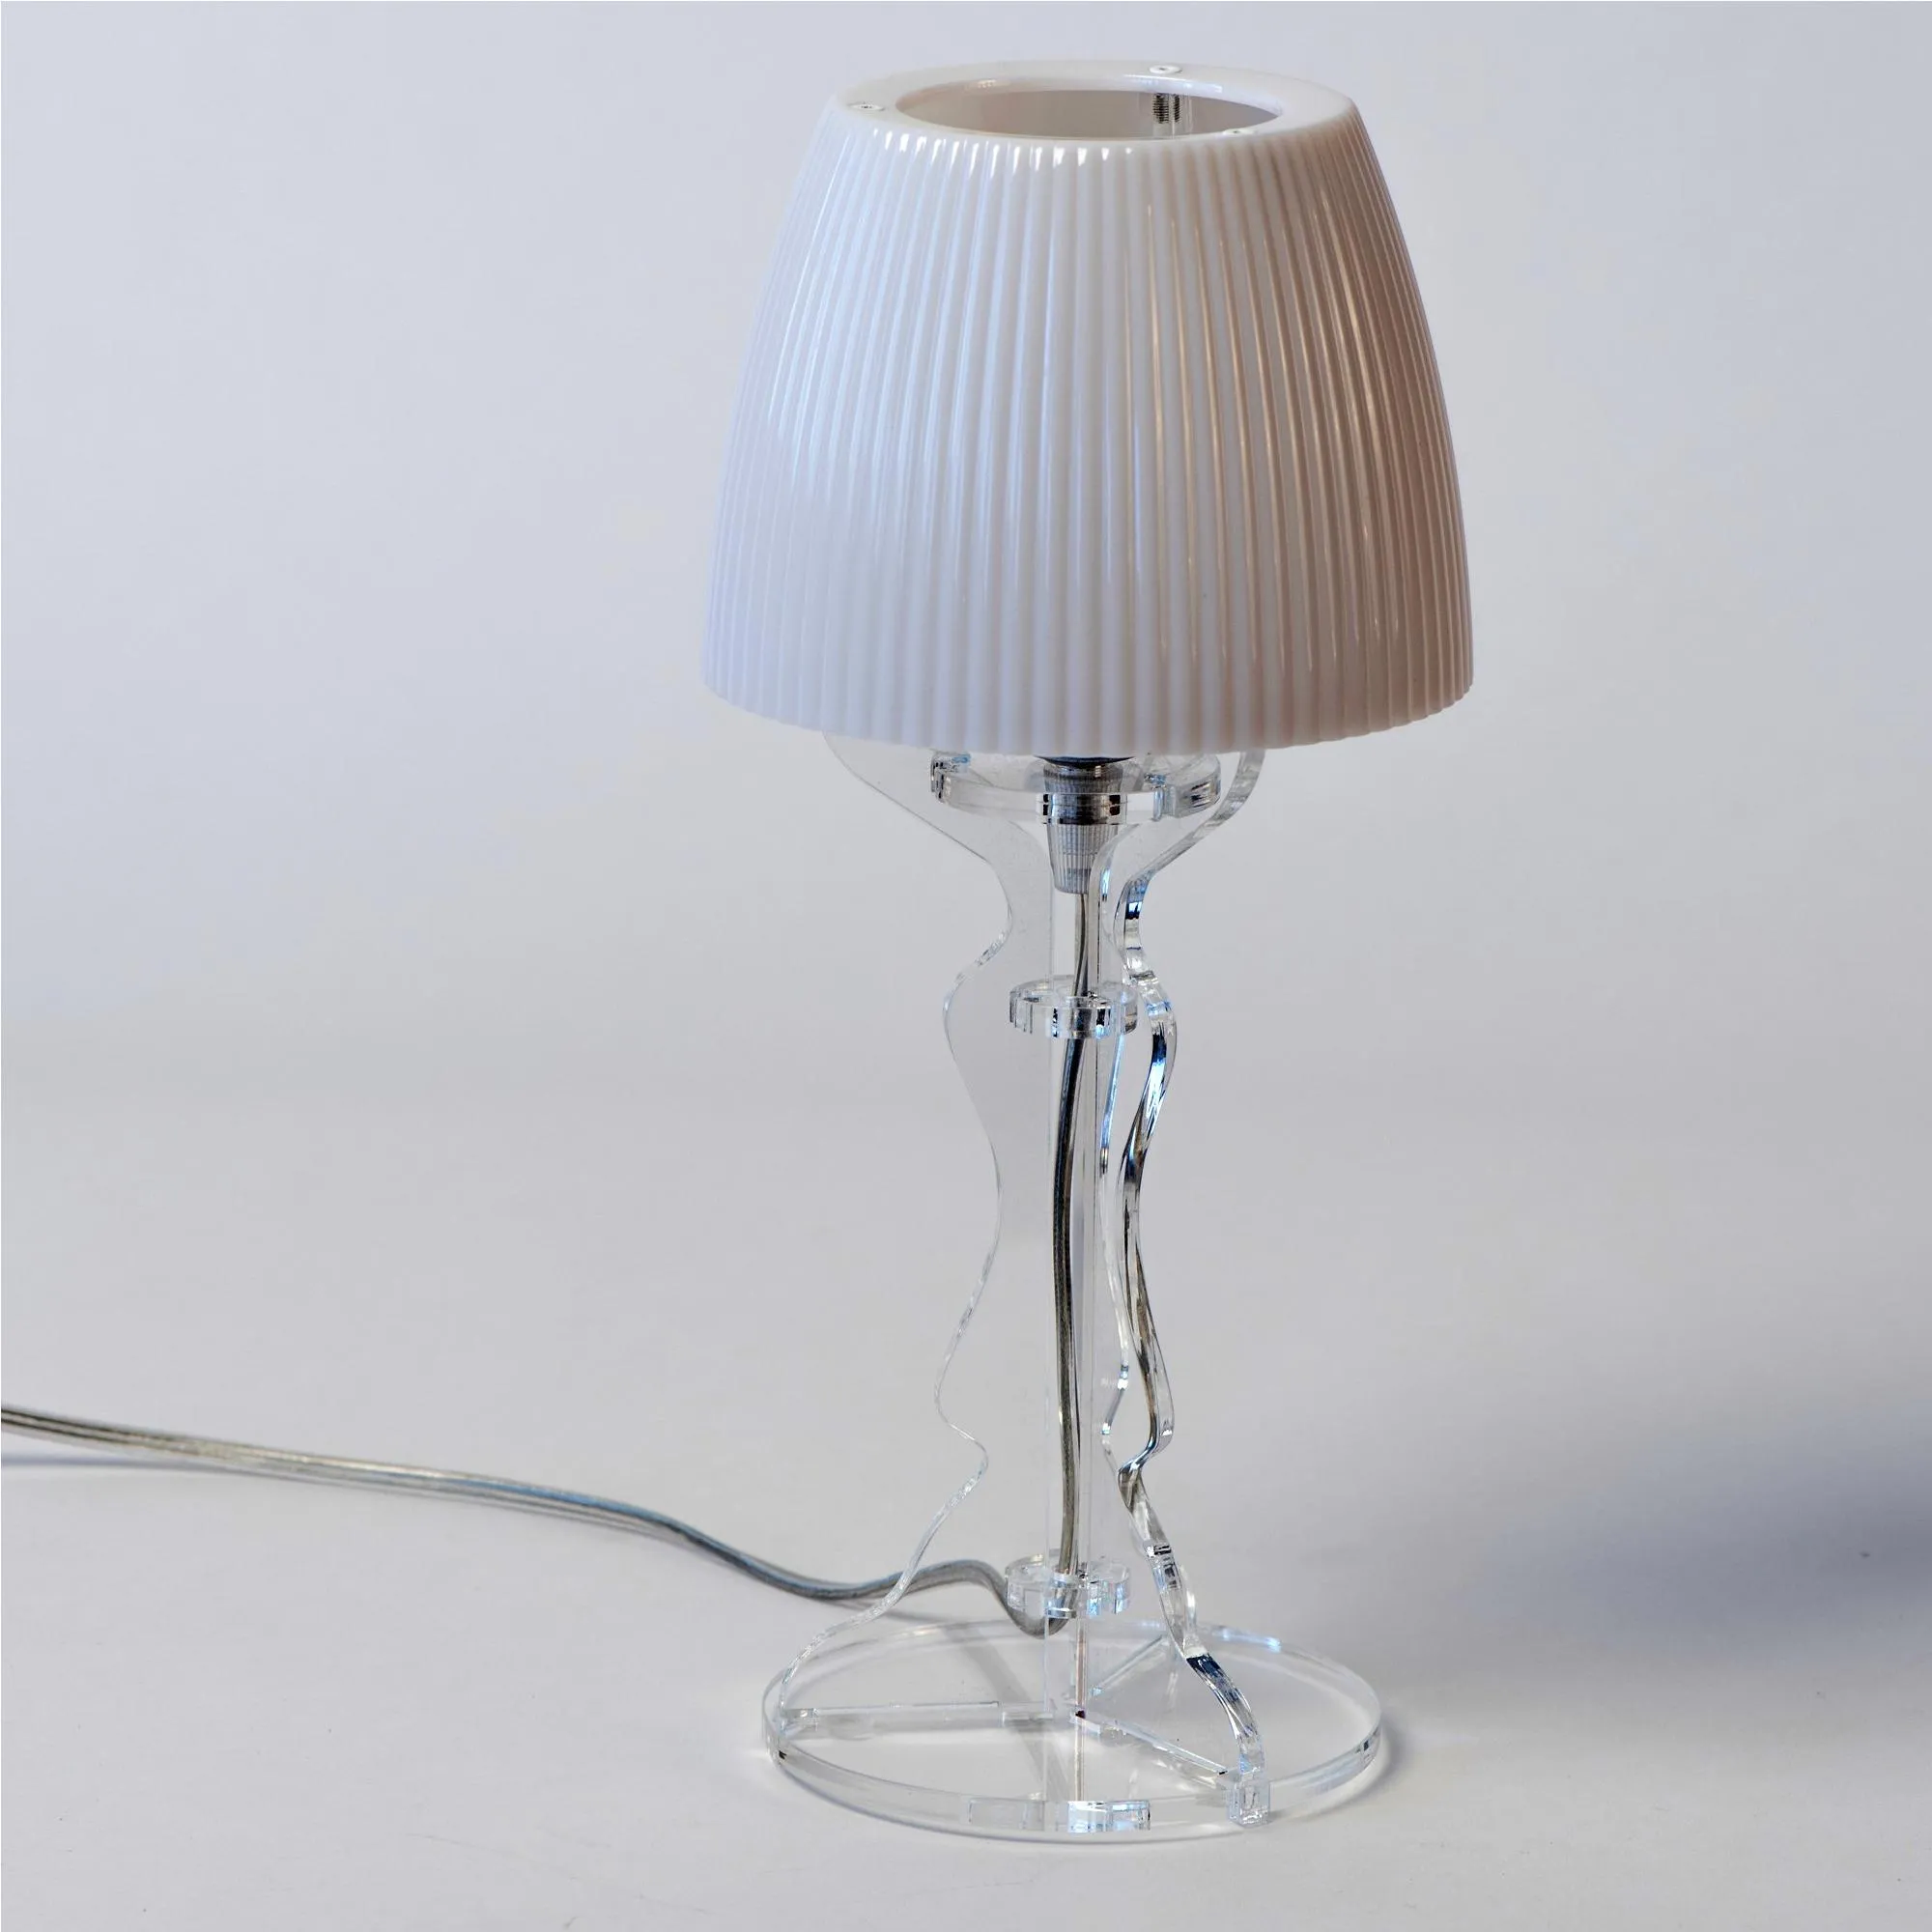 Lampada da tavolo Abat Jour Piccola LADY in Cristallo acrilico diametro Ø14xh31cm Trasparente Bianco